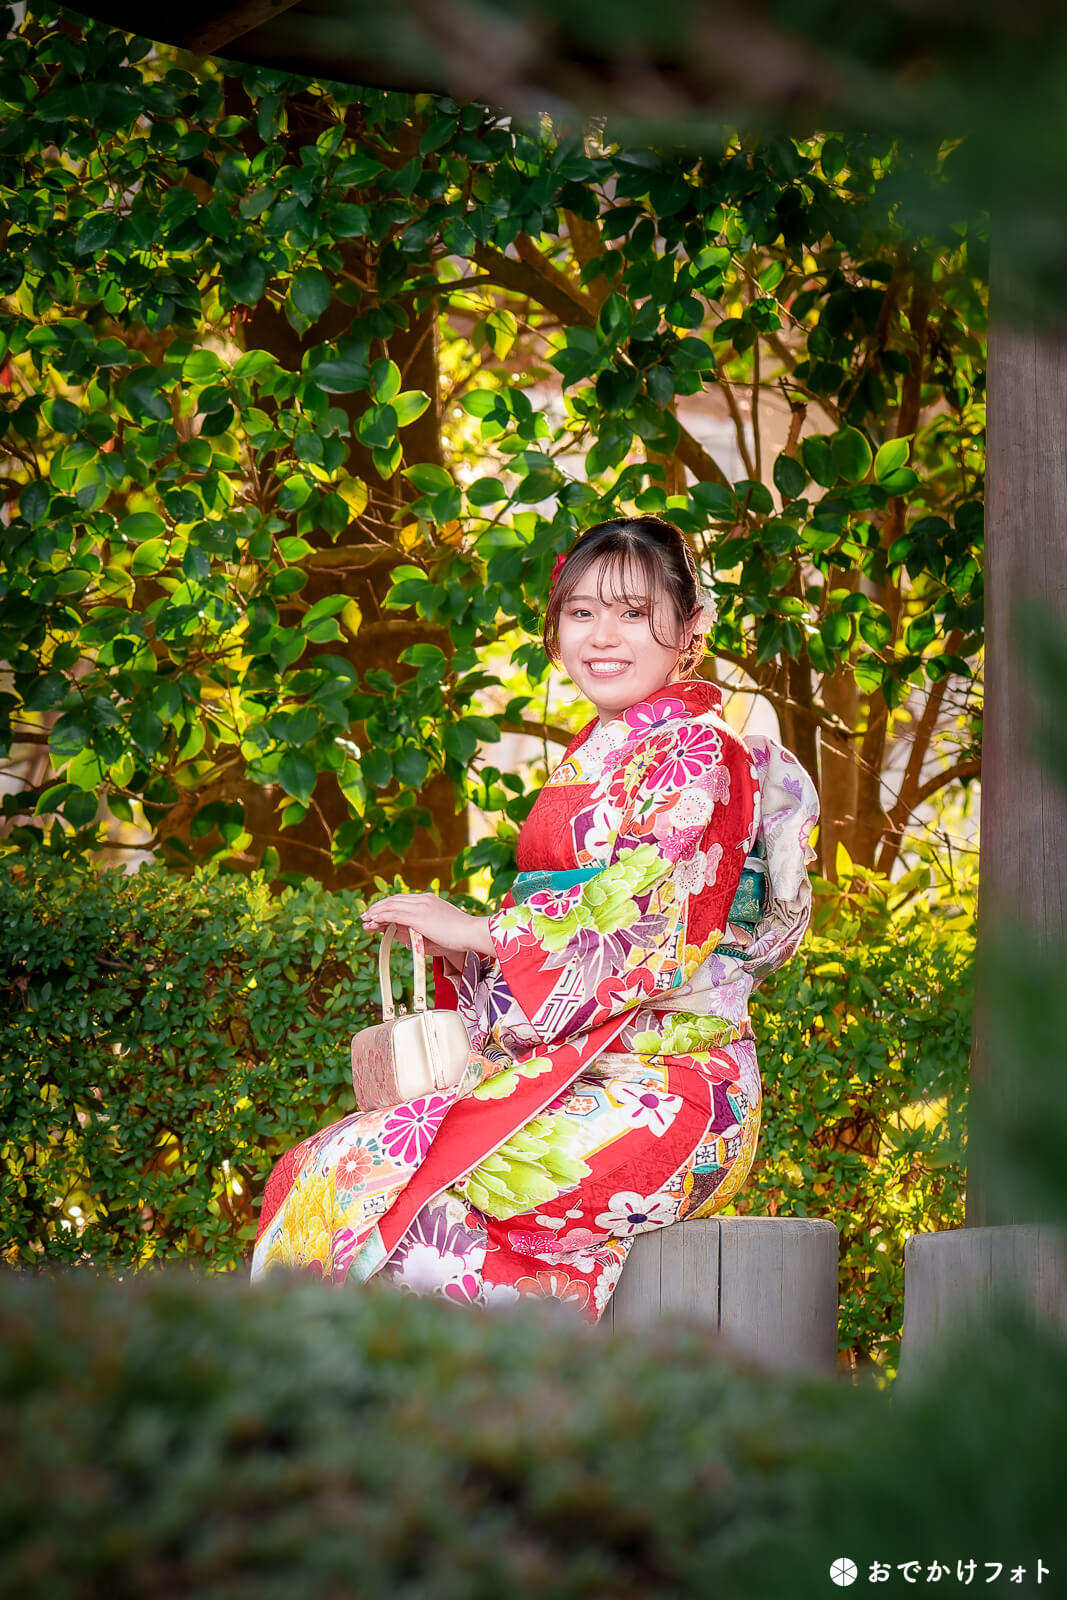 大濠公園日本庭園で成人式の後撮りロケーション撮影